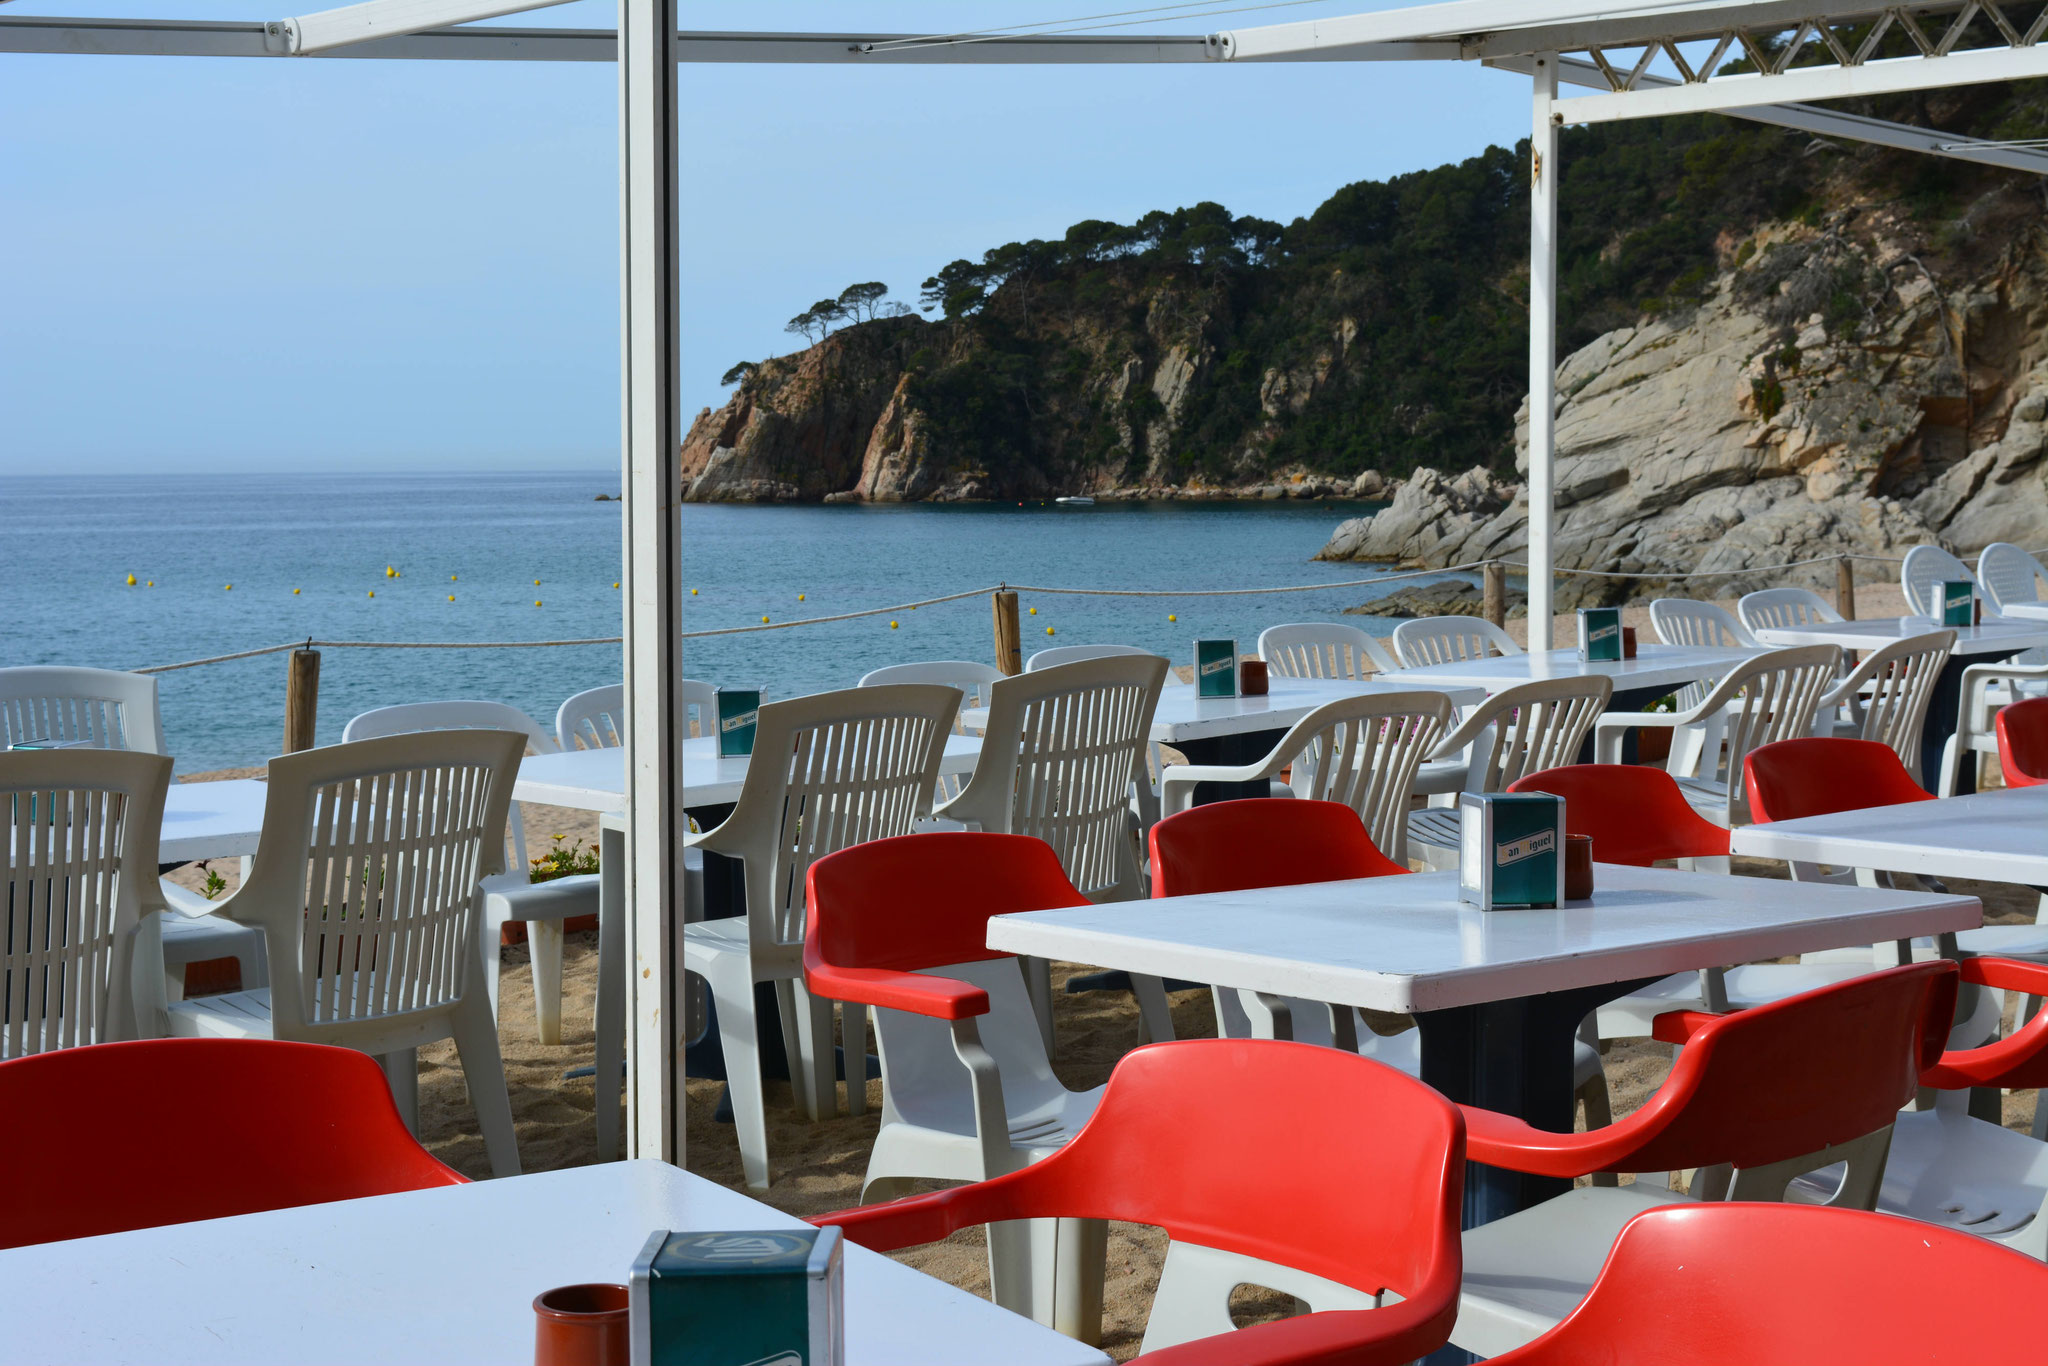 Bar, restaurant on the beach